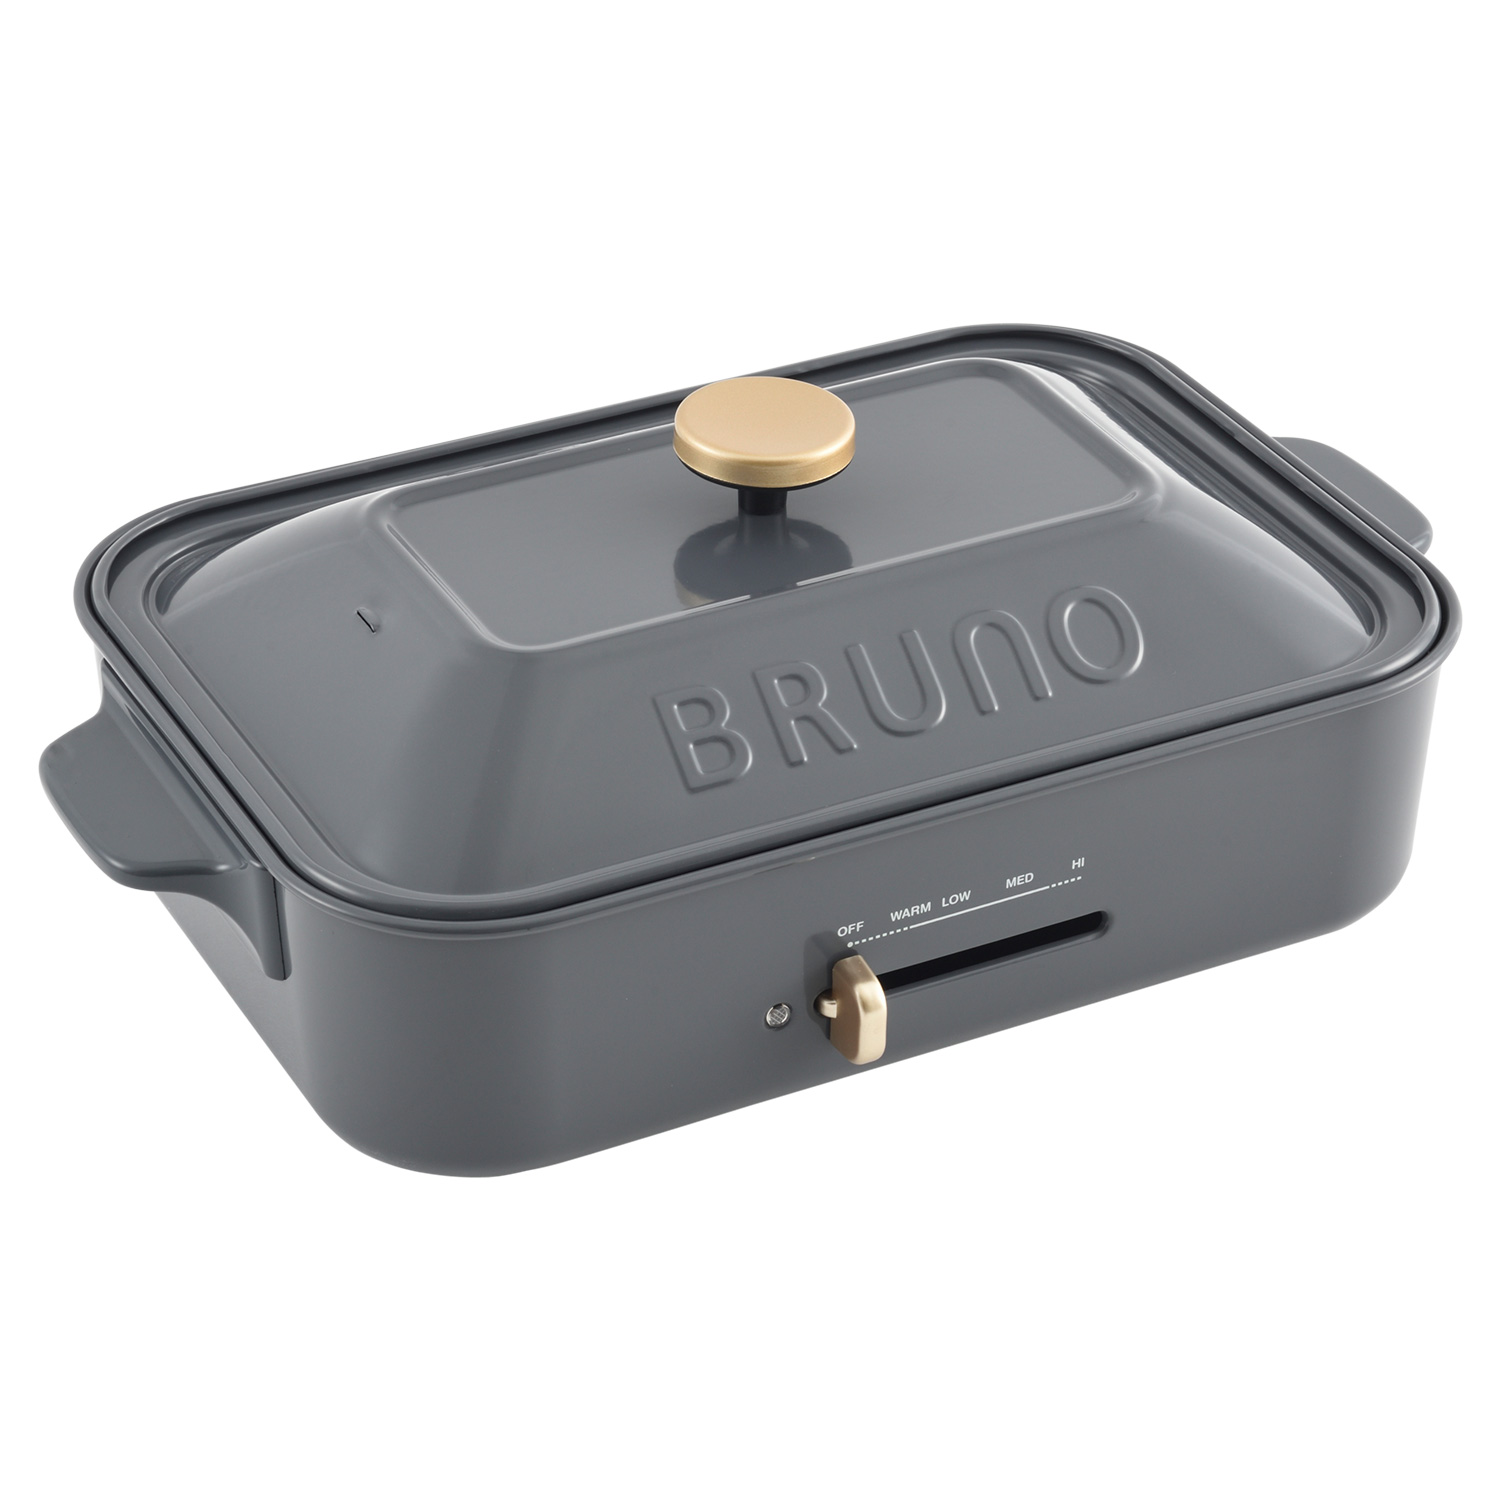 BRUNO ブルーノ ホットプレート たこ焼き器 焼肉 コンパクト 平面 電気式 ヒーター式 レシピブック 1200W 小型 小さい BOE021